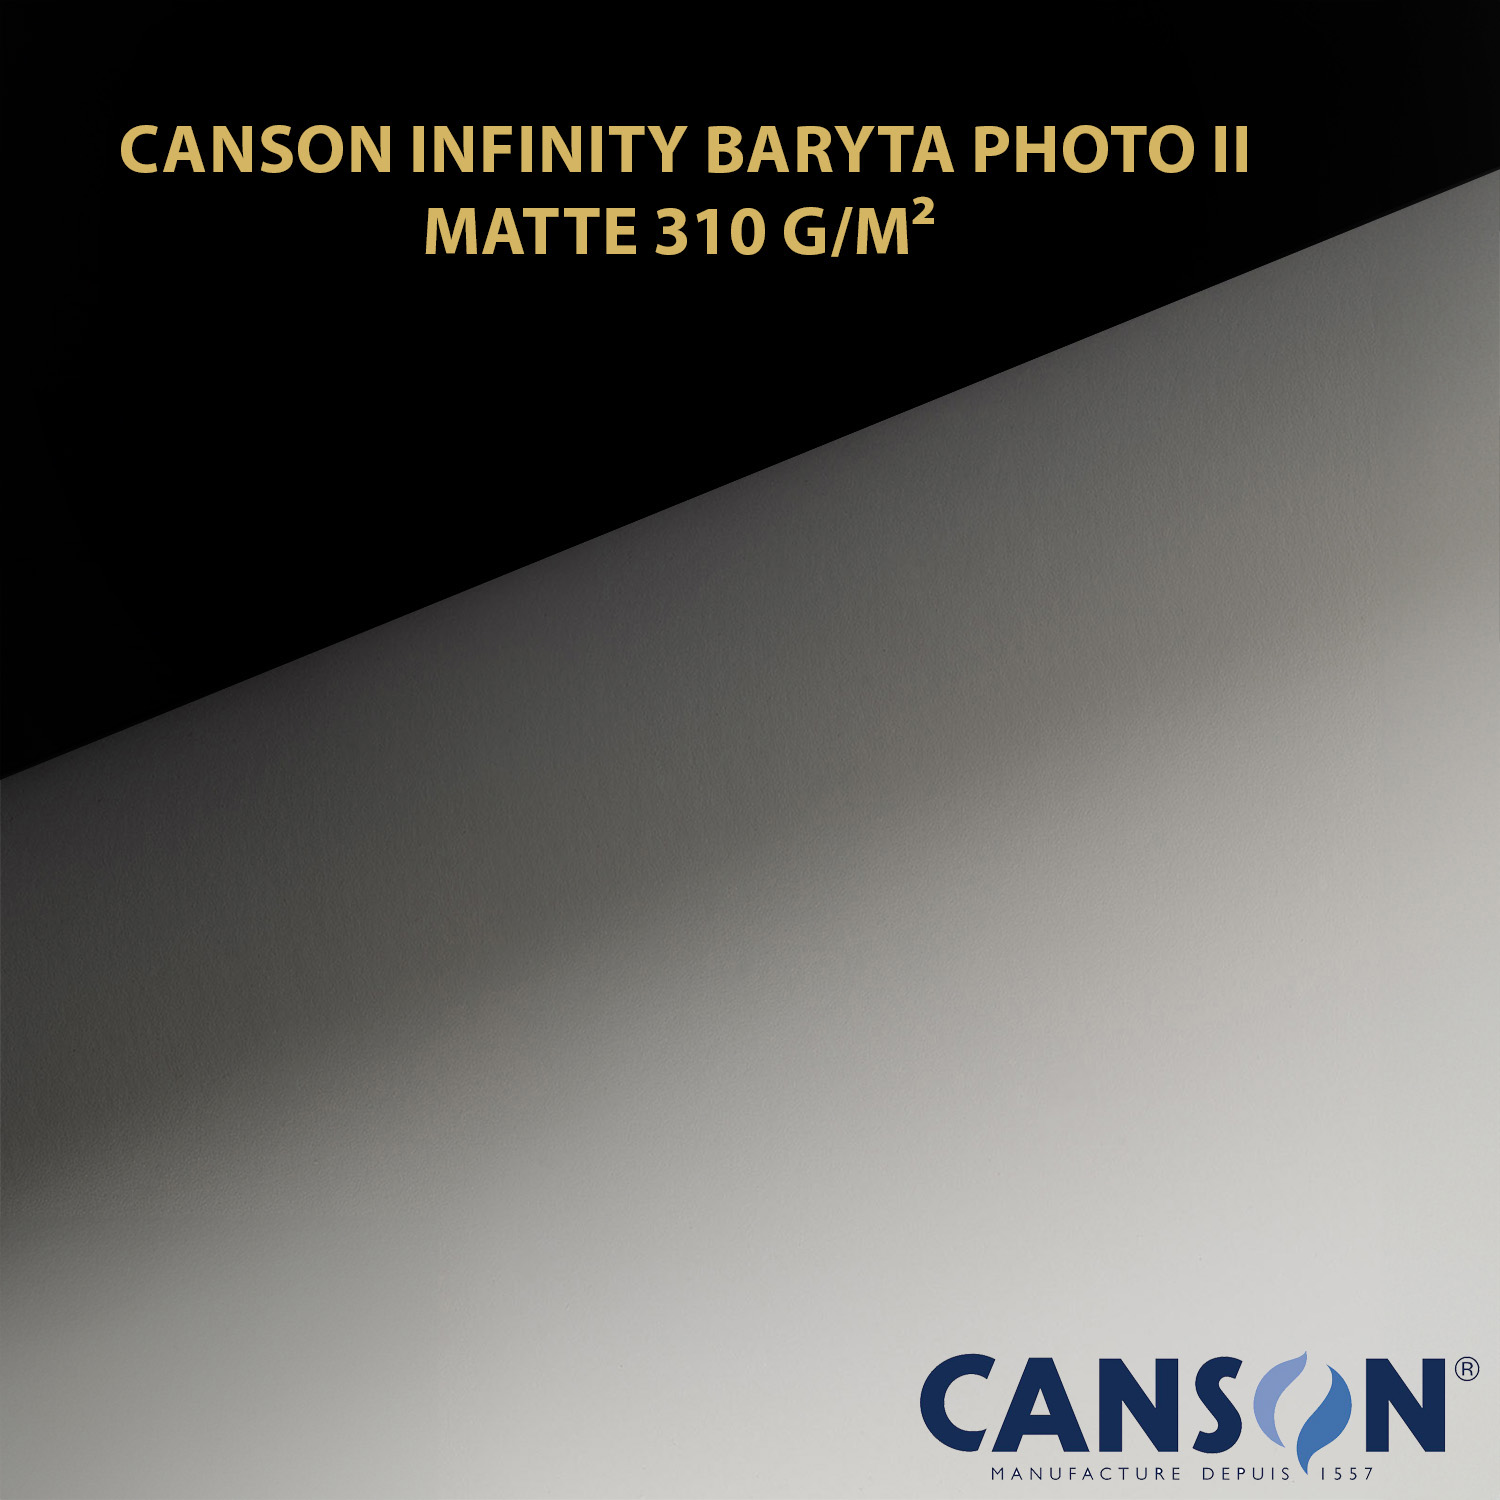 Impression et tirage Fineart pigmentaire sur papier Canson Infinity Baryta Photo II Matte 310 à Montpellier